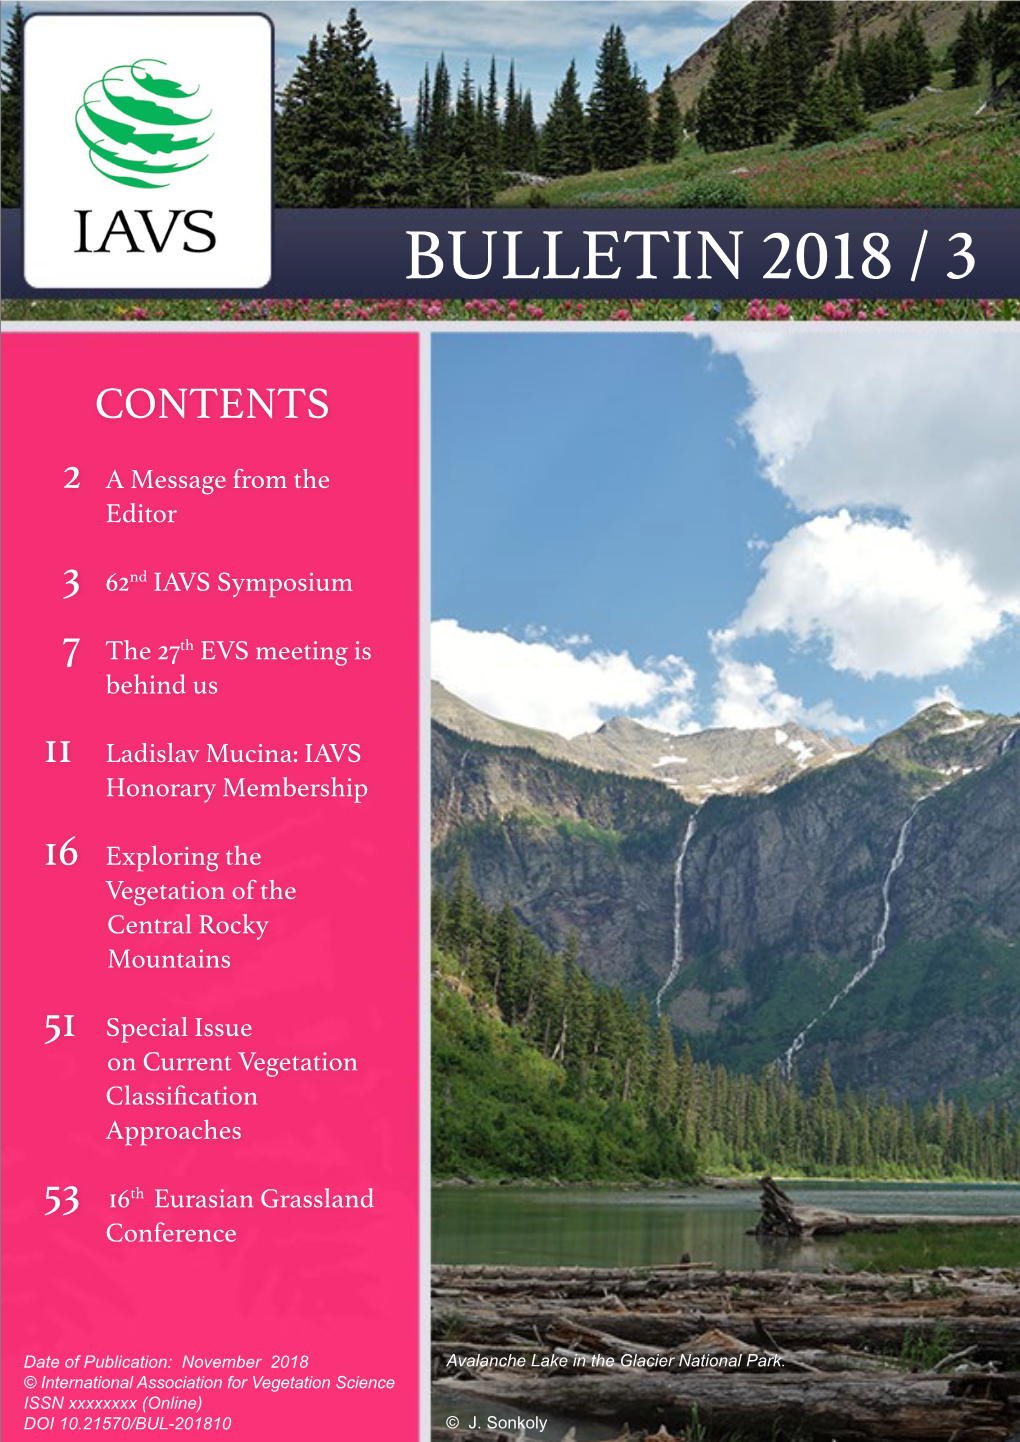 Bulletin 2018 / 3